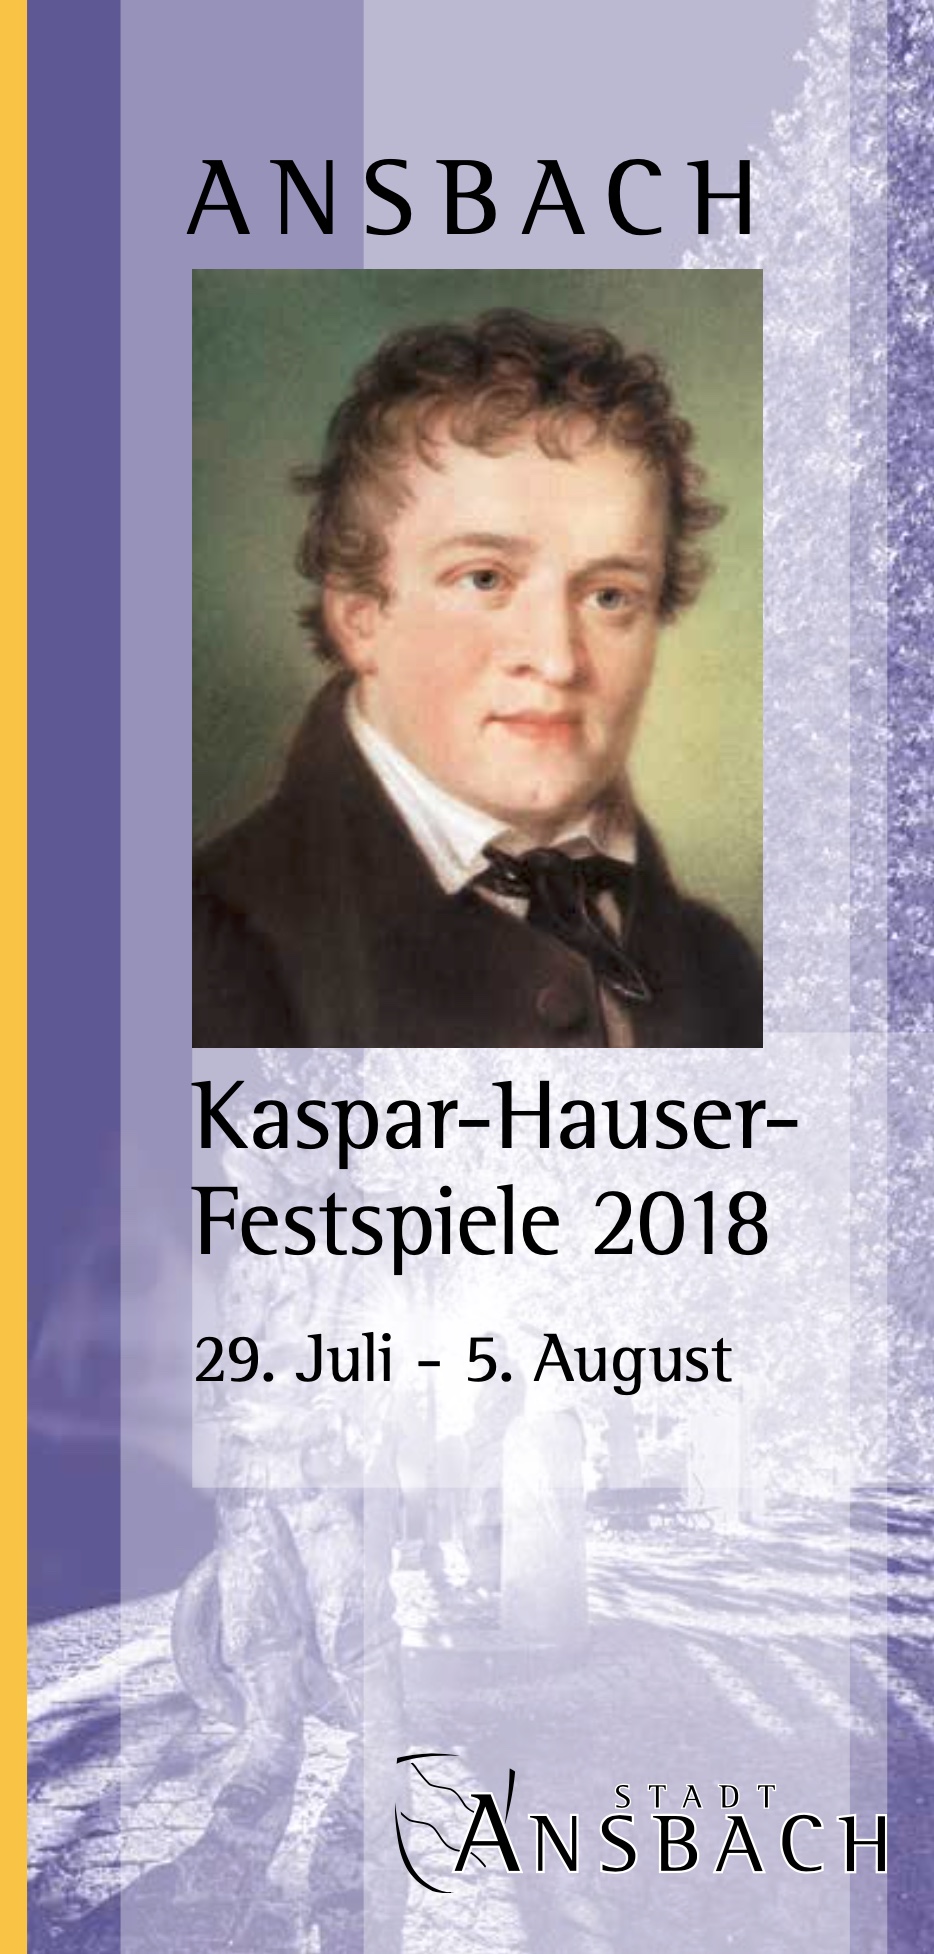 Kaspar-Hauser Festspiele 2018